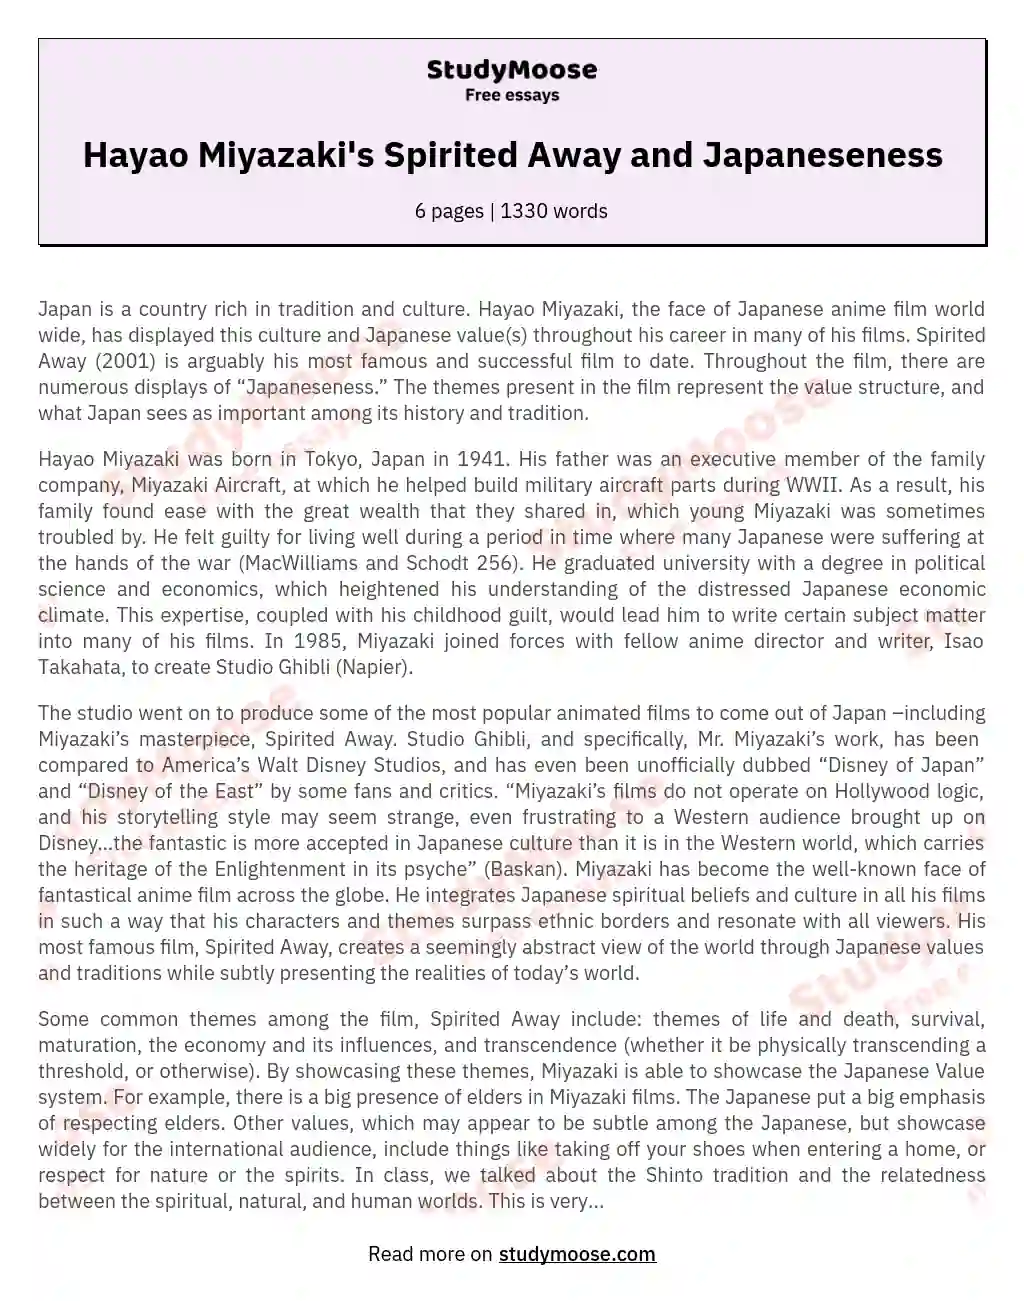 Hayao Miyazaki's Spirited Away and Japaneseness